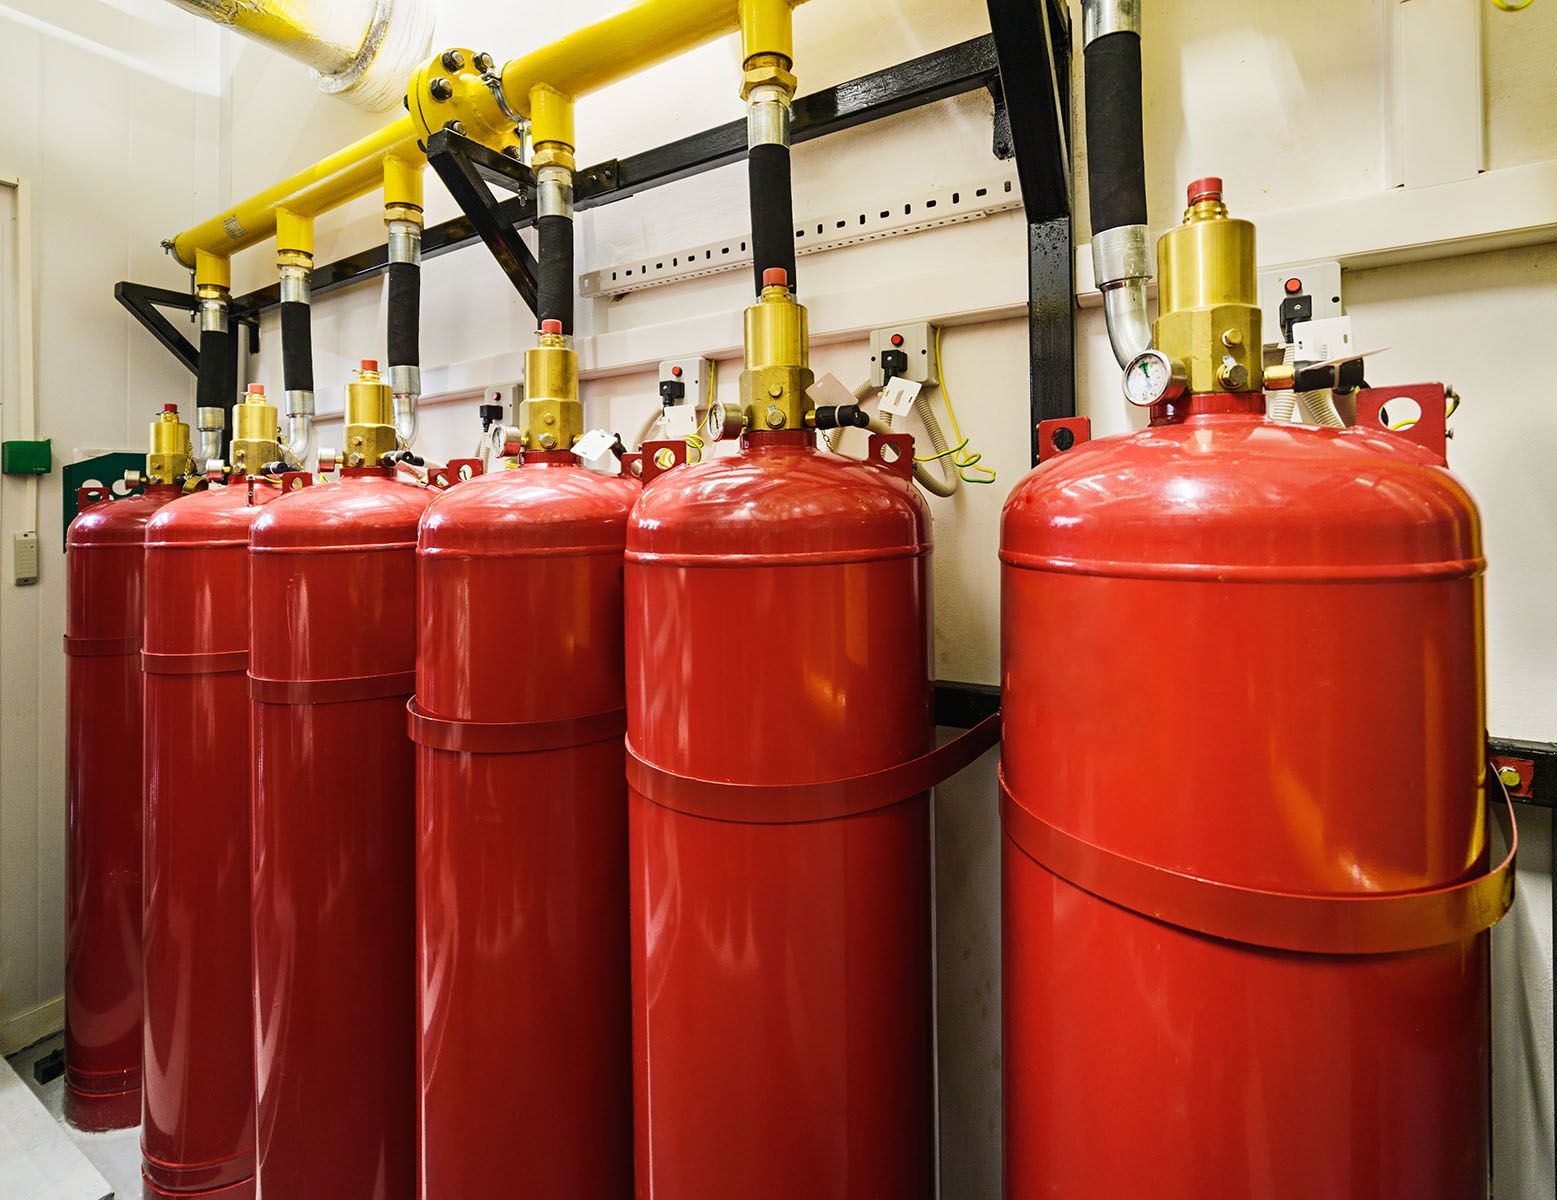 Foto 4 de Extintores y material contra incendios en Avilés | Alba Protección de Incendios, S.L.